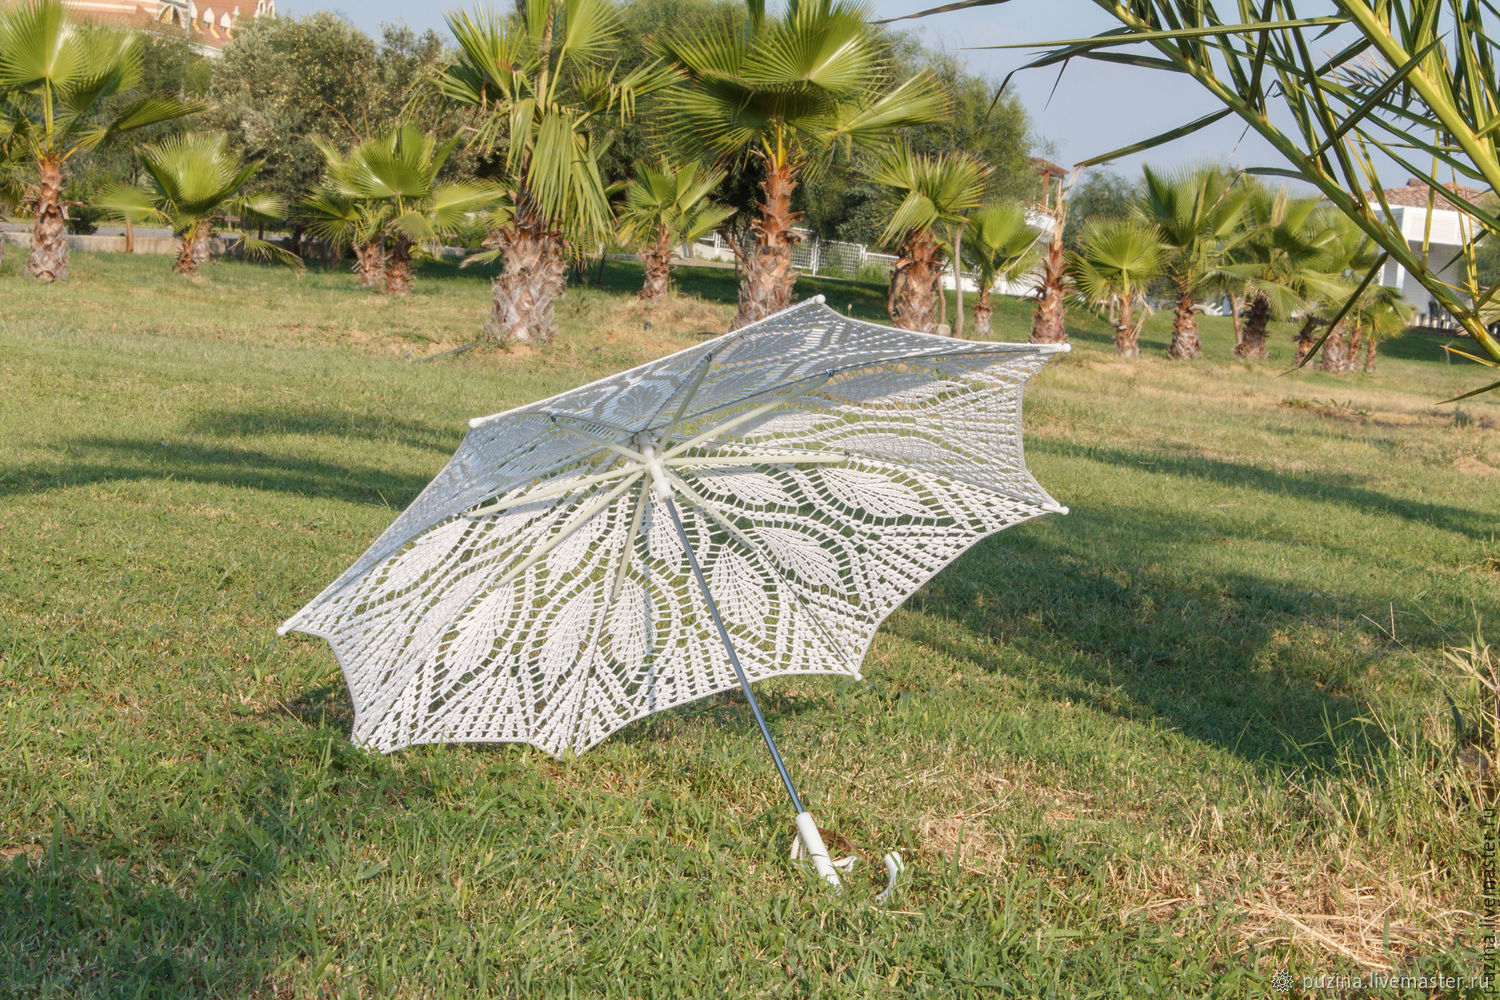 Зонт и листья